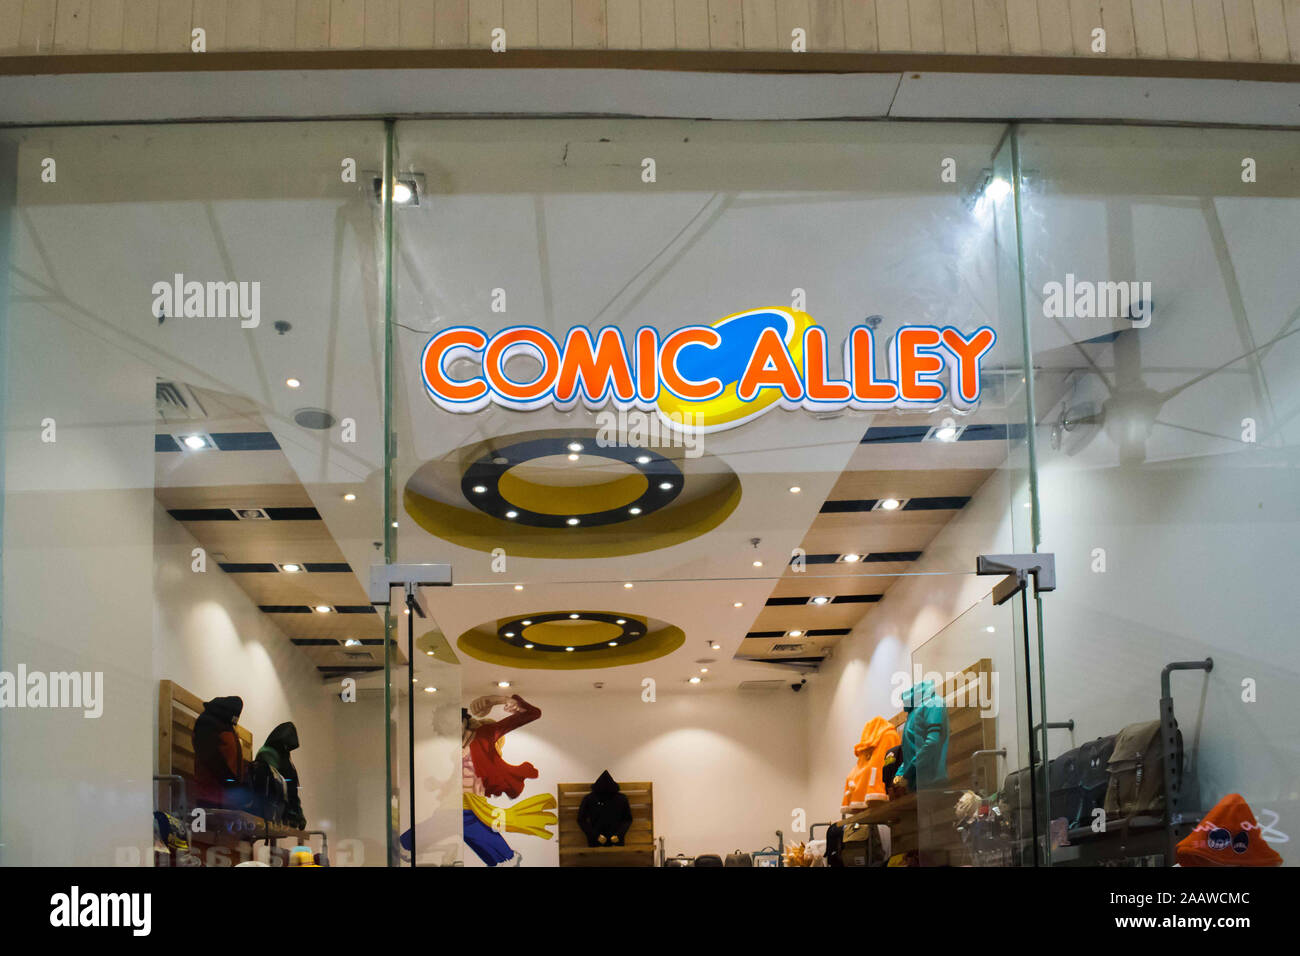 2 NOVEMBRE 2019-LA VILLE DE BAGUIO AUX PHILIPPINES : Comic Alley affichage. Magasin qui vend des figurines de bande dessinée bande dessinée et costumes. Banque D'Images